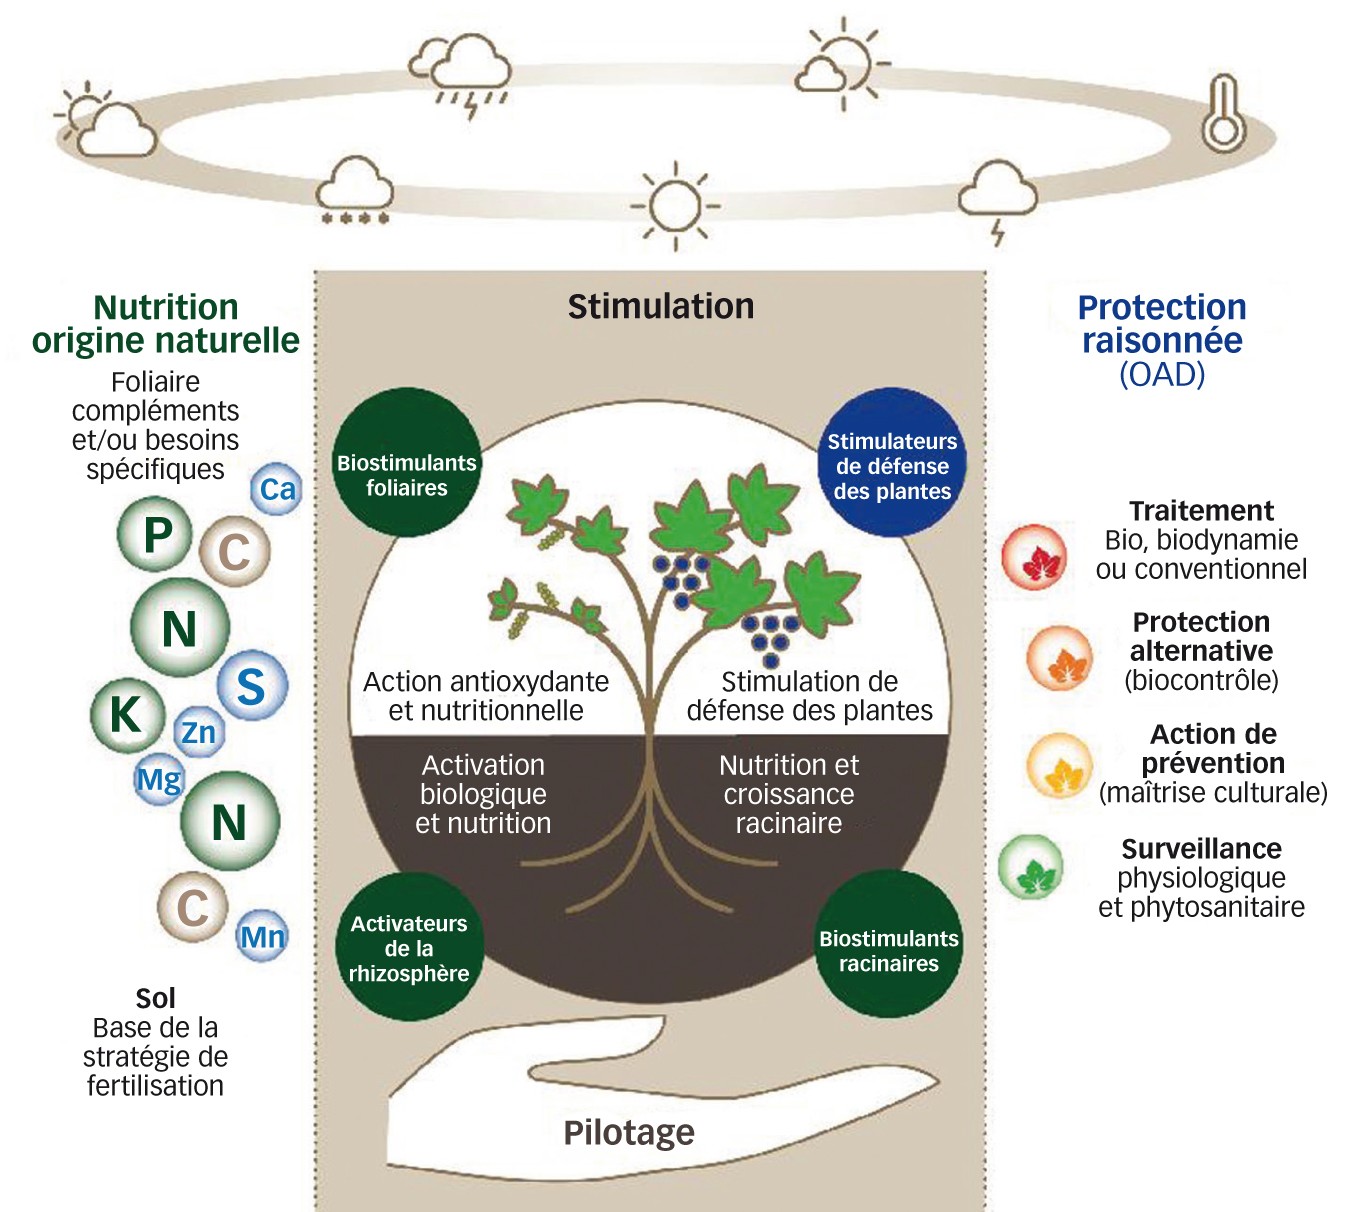 Fig. 7 : Concept global nutrition/stimulation/protection géré par OAD 